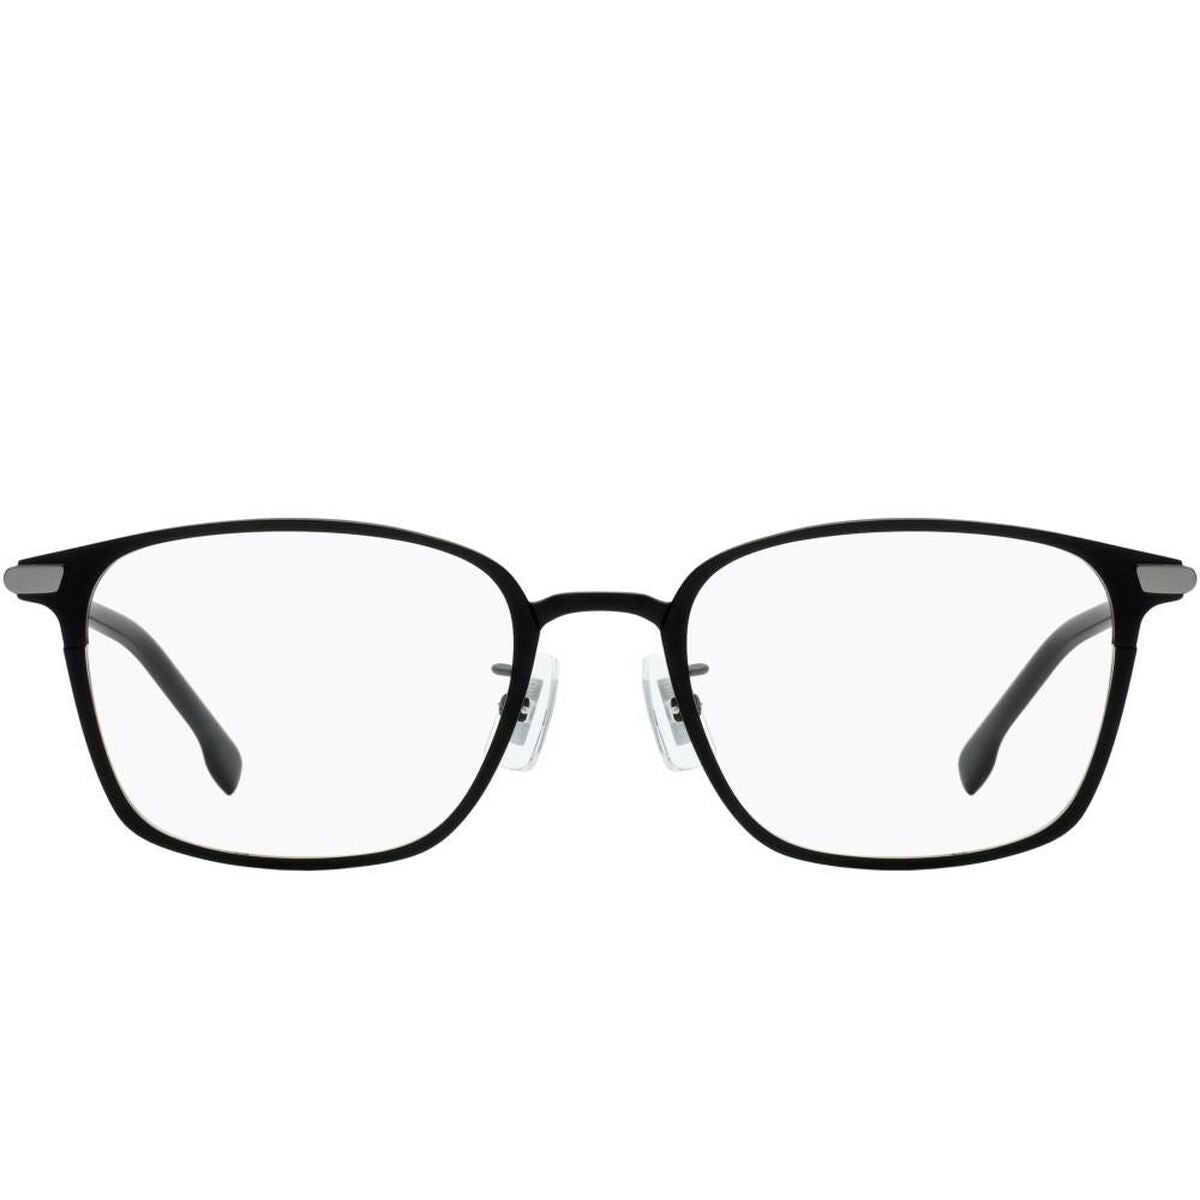 Kaufe Herrensonnenbrille Hugo Boss BOSS 1071_F bei AWK Flagship um € 259.00